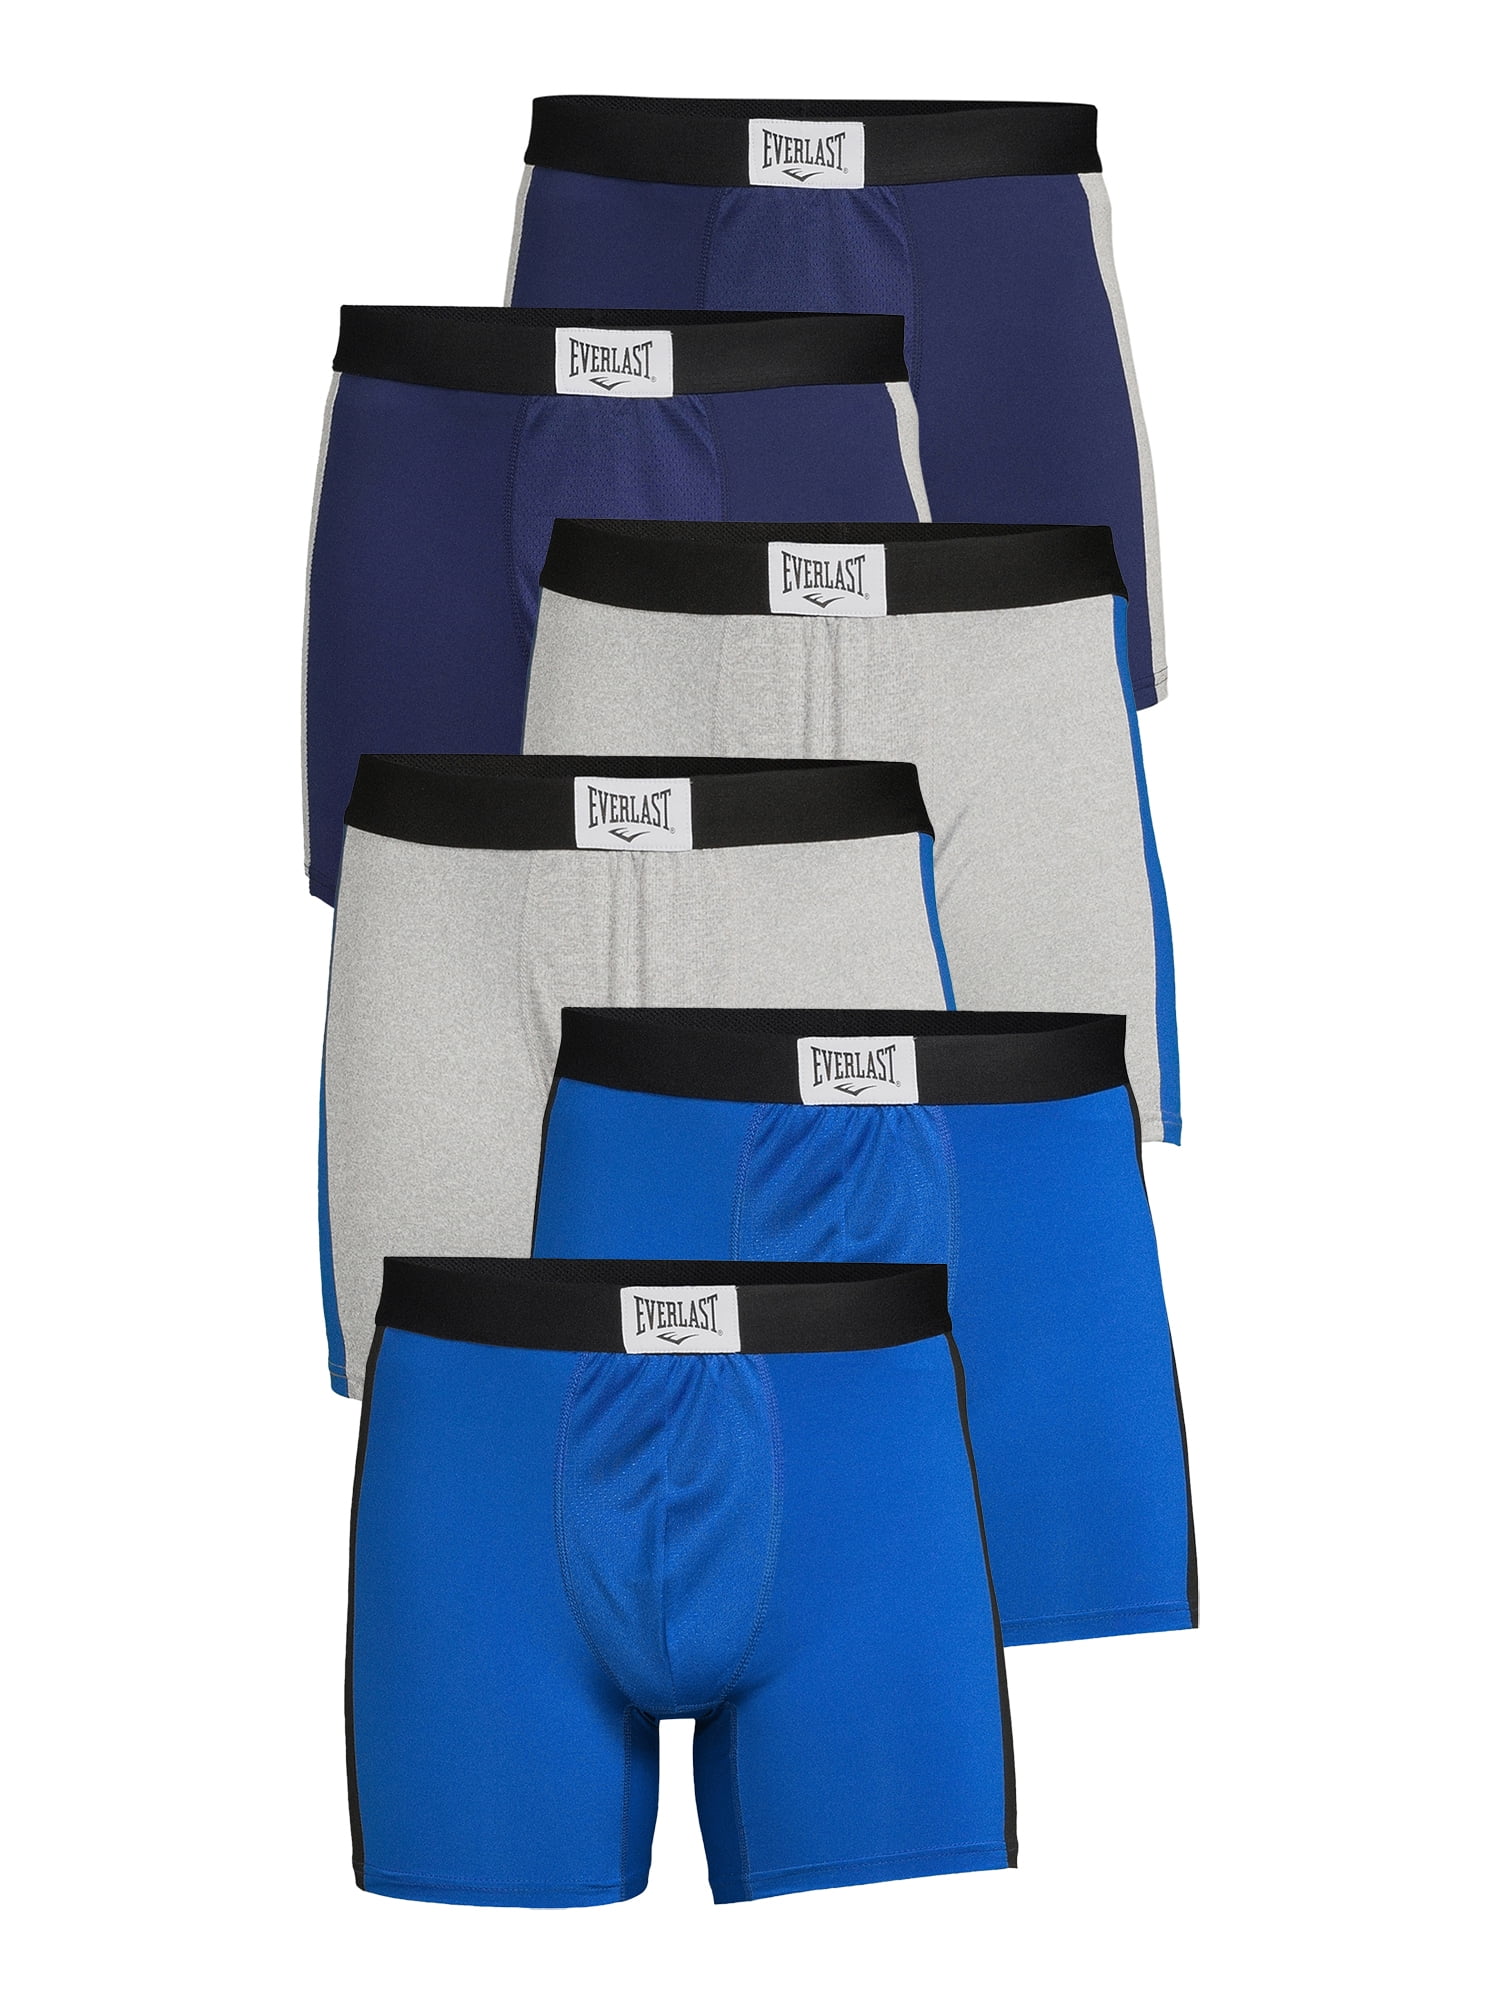 6-Pack Everlast Men's Boxer Briefs (limited sizes/colors)